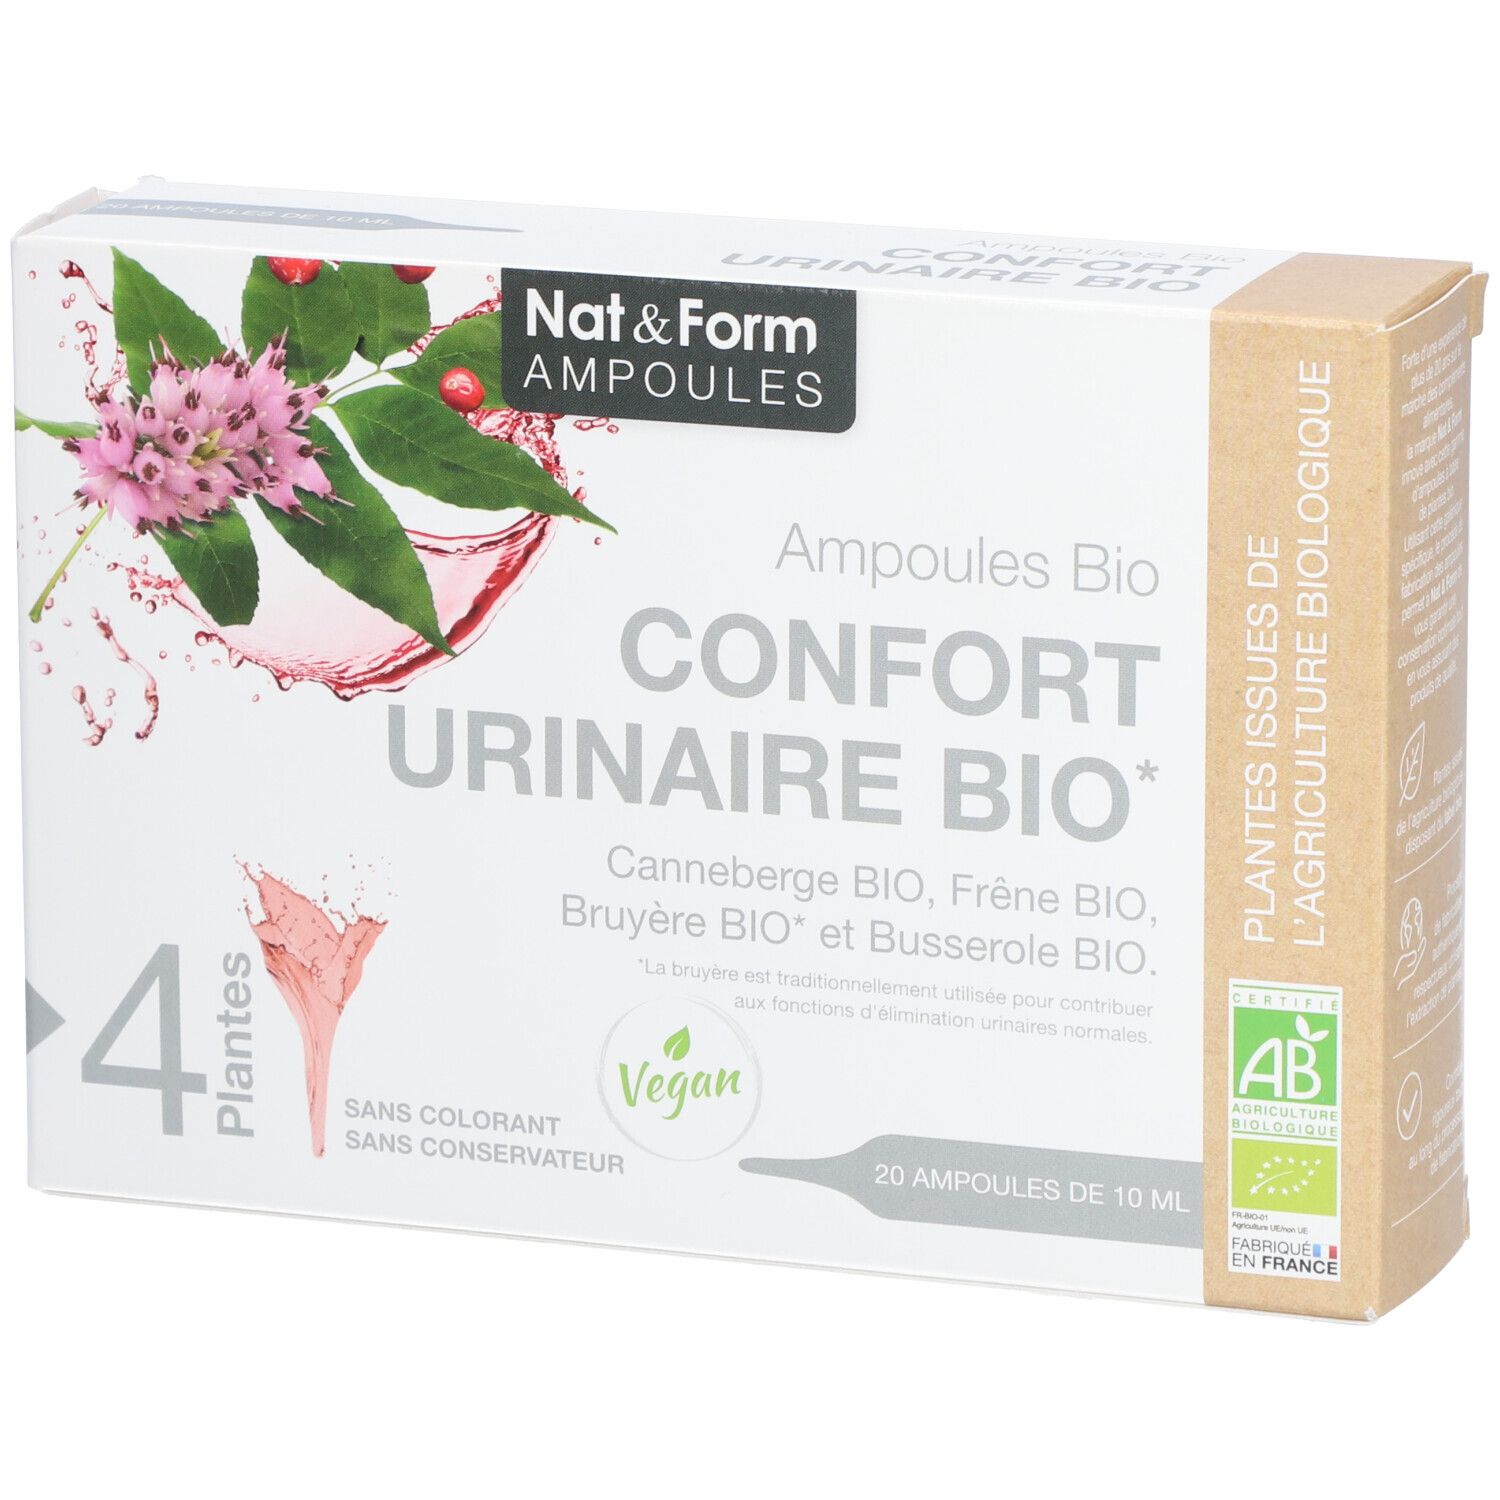 Nat&Form Ampoules Confort urinaire bio